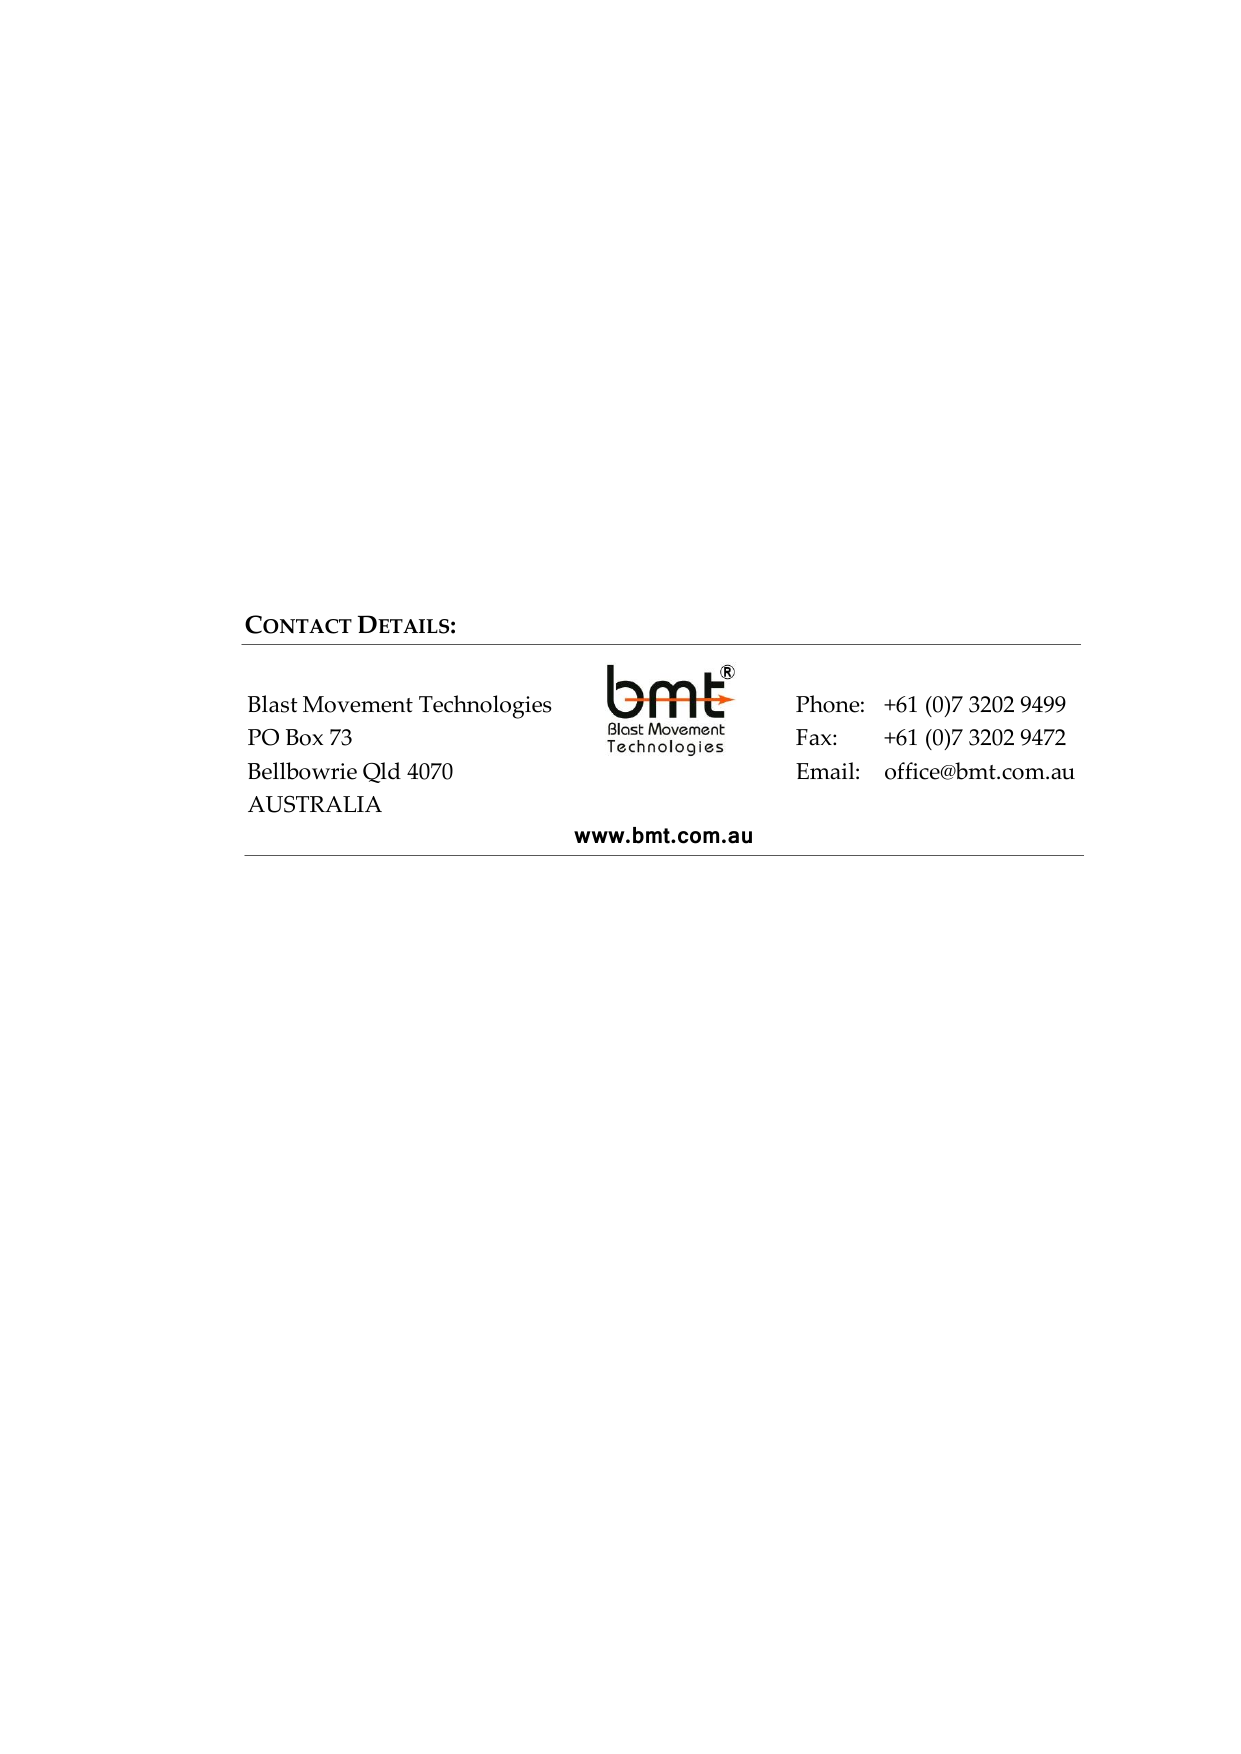              Blast Movement Technologies PO Box 73 Bellbowrie Qld 4070 AUSTRALIA  CONTACT DETAILS: www.bmt.com.au Phone:  +61 (0)7 3202 9499 Fax:  +61 (0)7 3202 9472 Email:  office@bmt.com.au 